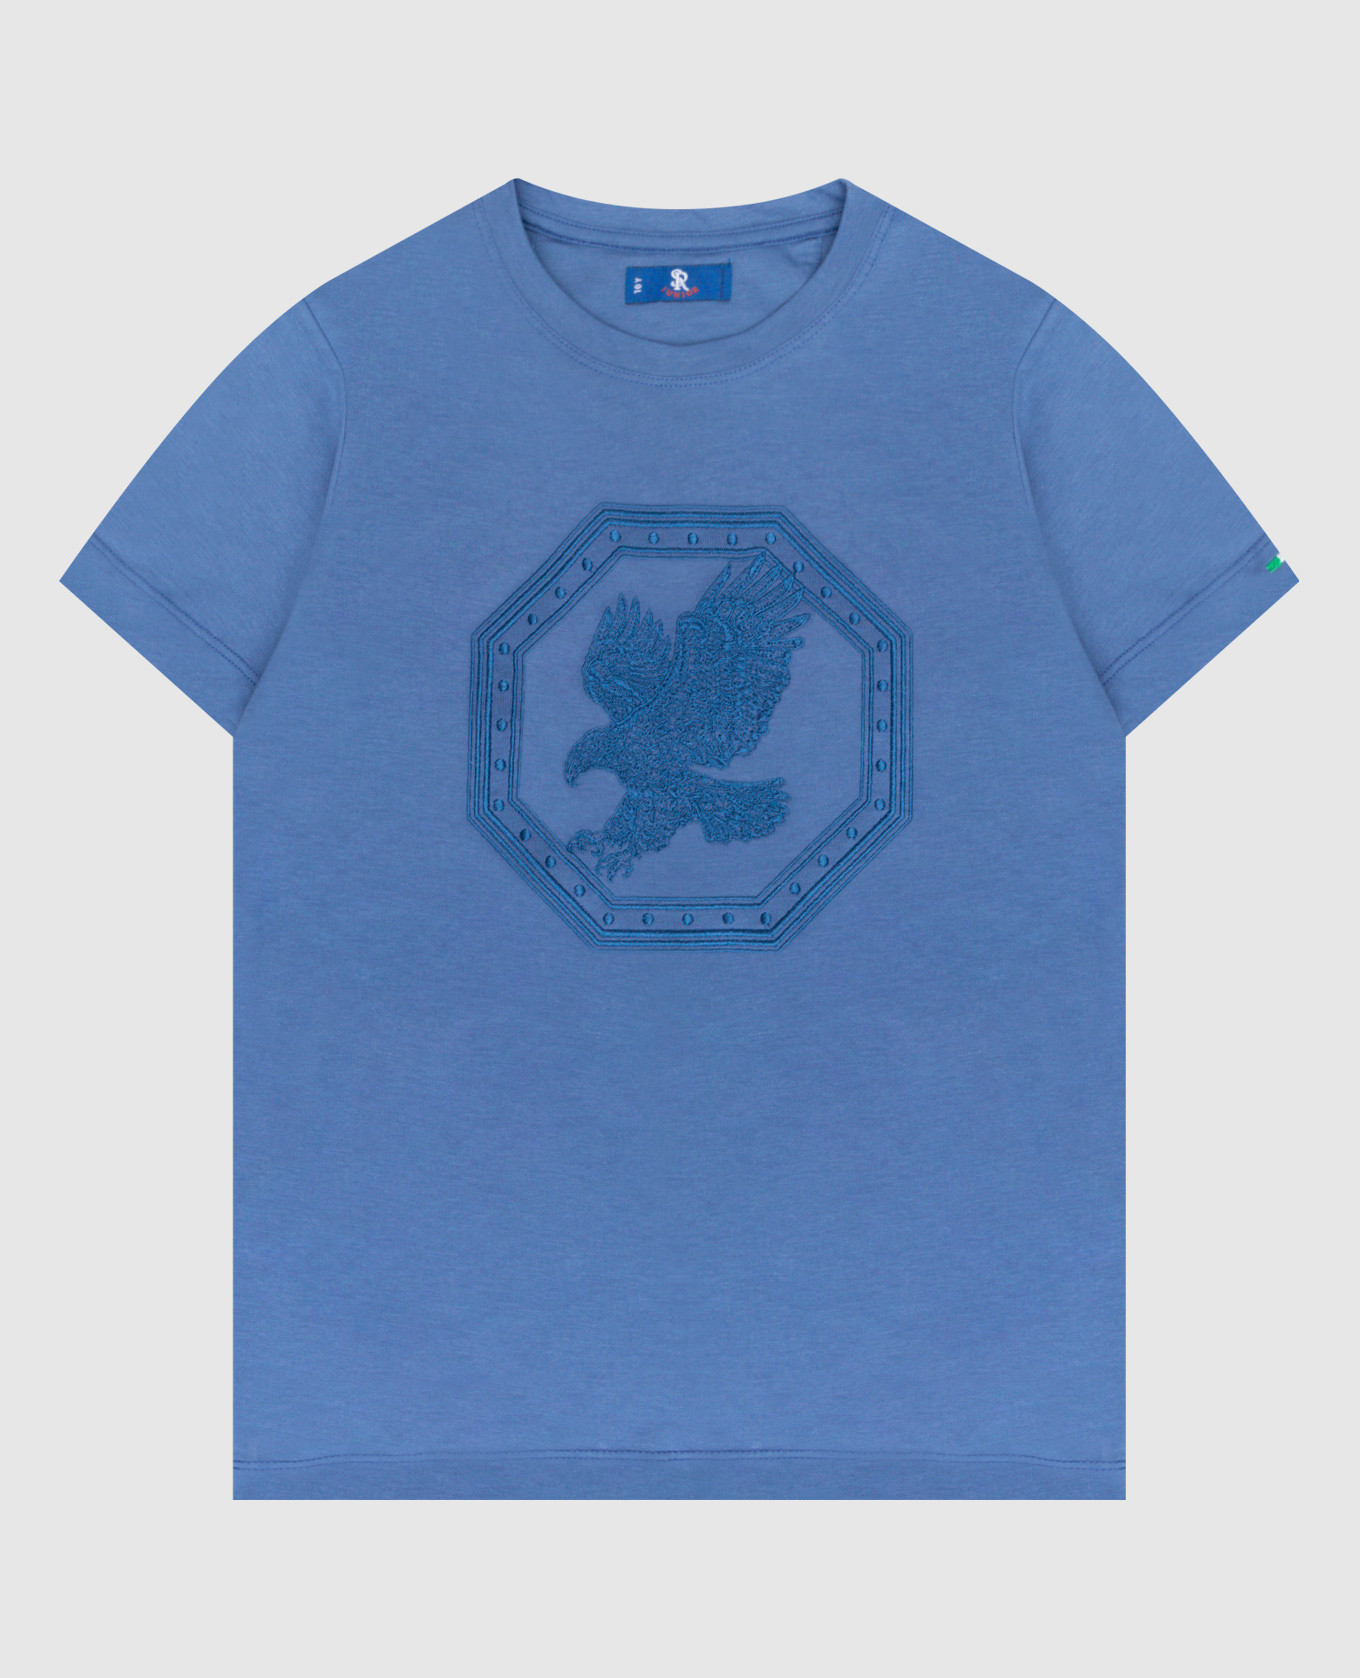 Детская синяя футболка с вышивкой в виде орла